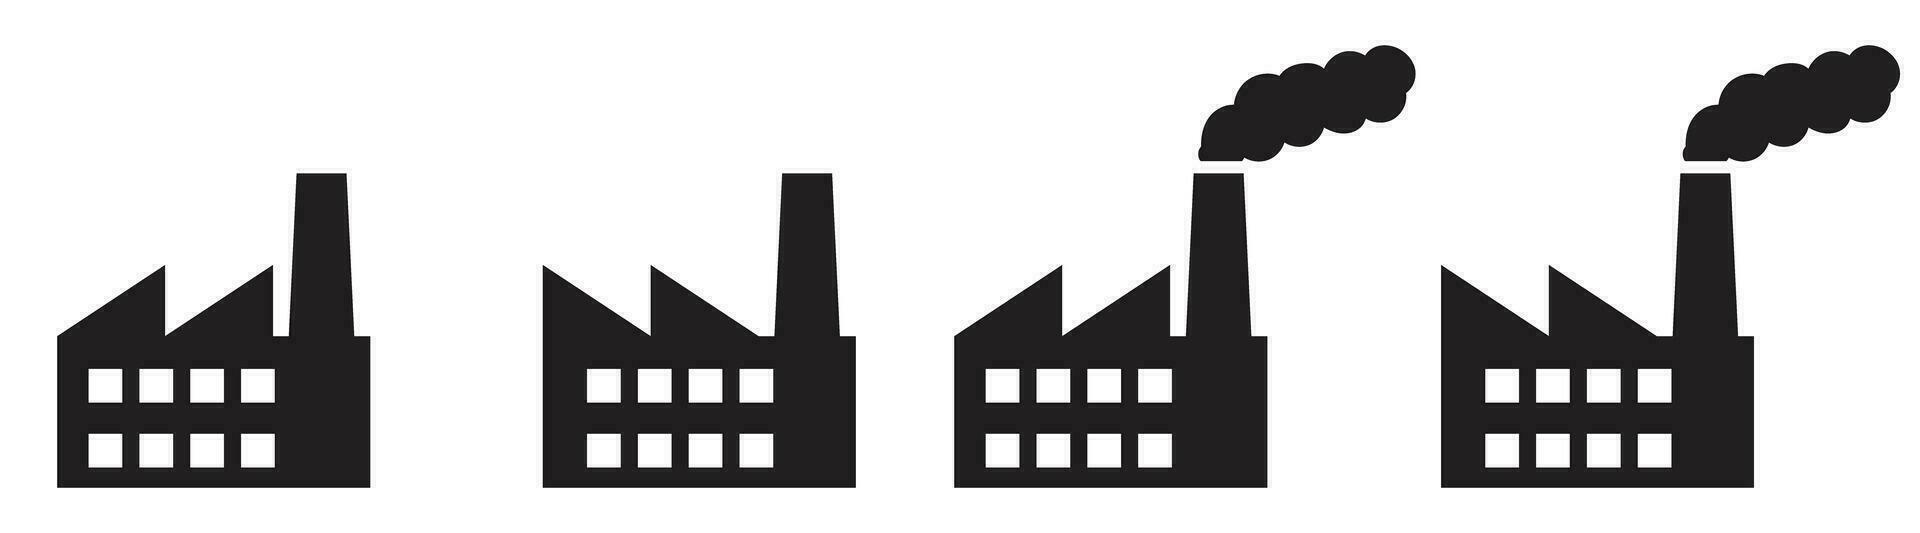 fábrica edificio industrial silueta icono vector